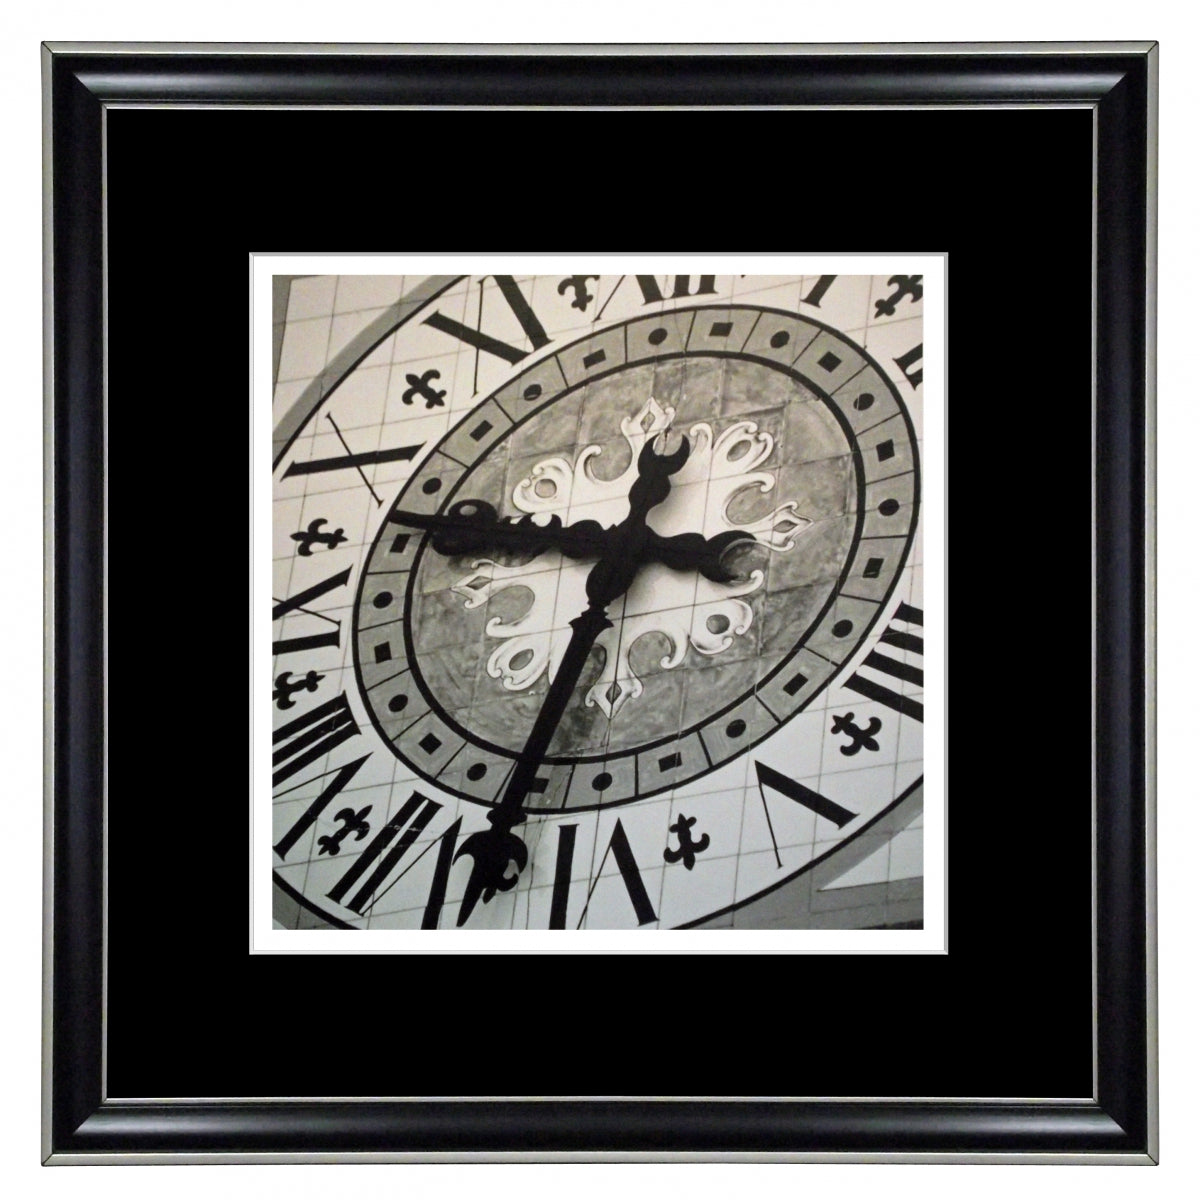 Obraz - Tarcza zegara - reprodukcja w ramie K519 40x40 cm - Obrazy Reprodukcje Ramy | ergopaul.pl